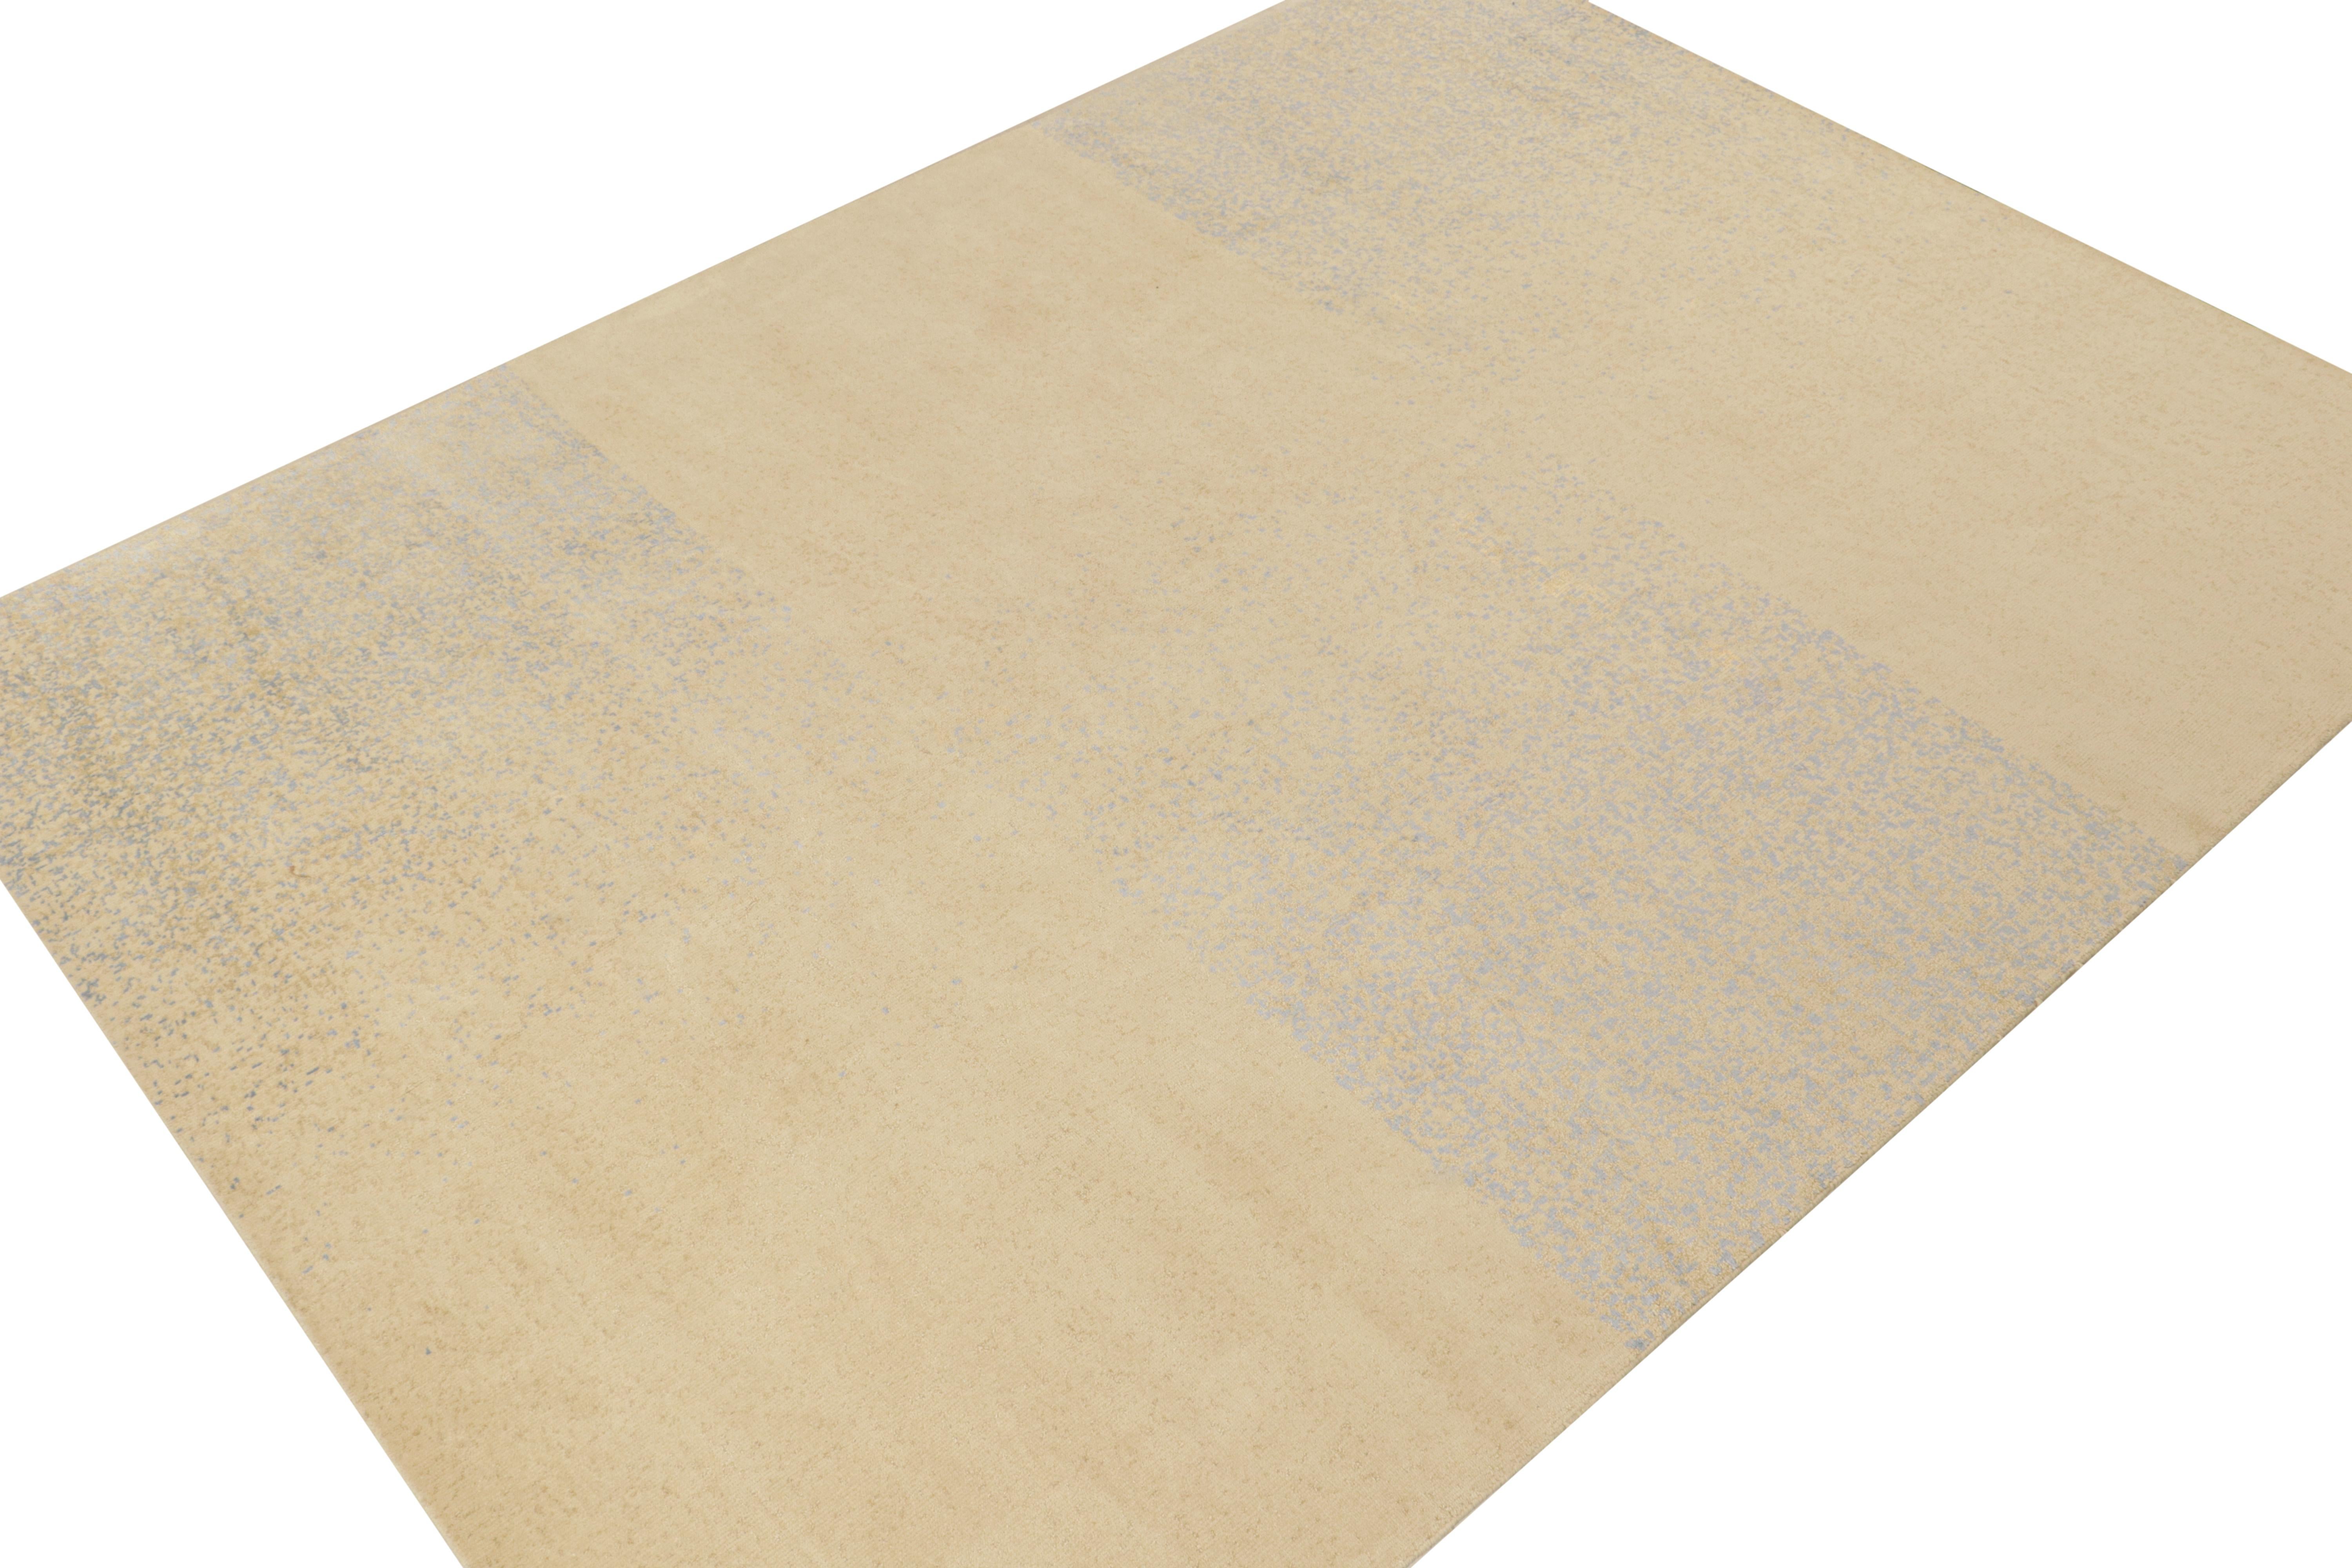 Dieser abstrakte Teppich im Format 9x12 ist eine kühne Ergänzung der modernen Designs von Rug & Kilim. Handgeknüpft aus Wolle und Seide.
Weiter zum Design: 
Das Design wechselt sich auf einzigartige Weise in Quadraten ab, während es das